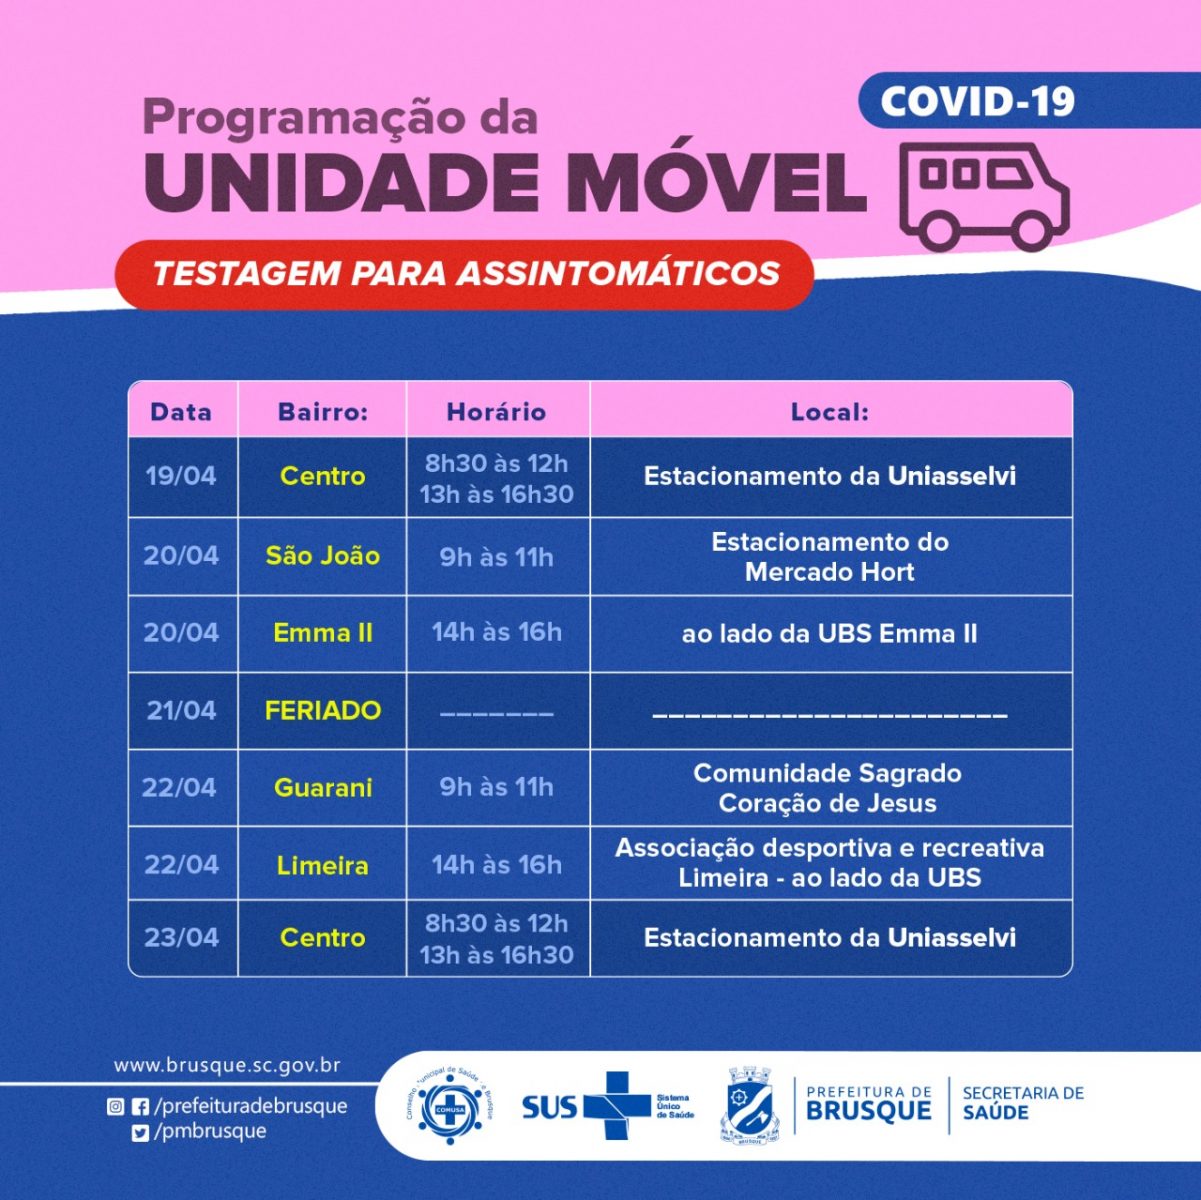 Covid-19: Unidade móvel para assintomáticos divulga agenda da próxima semana